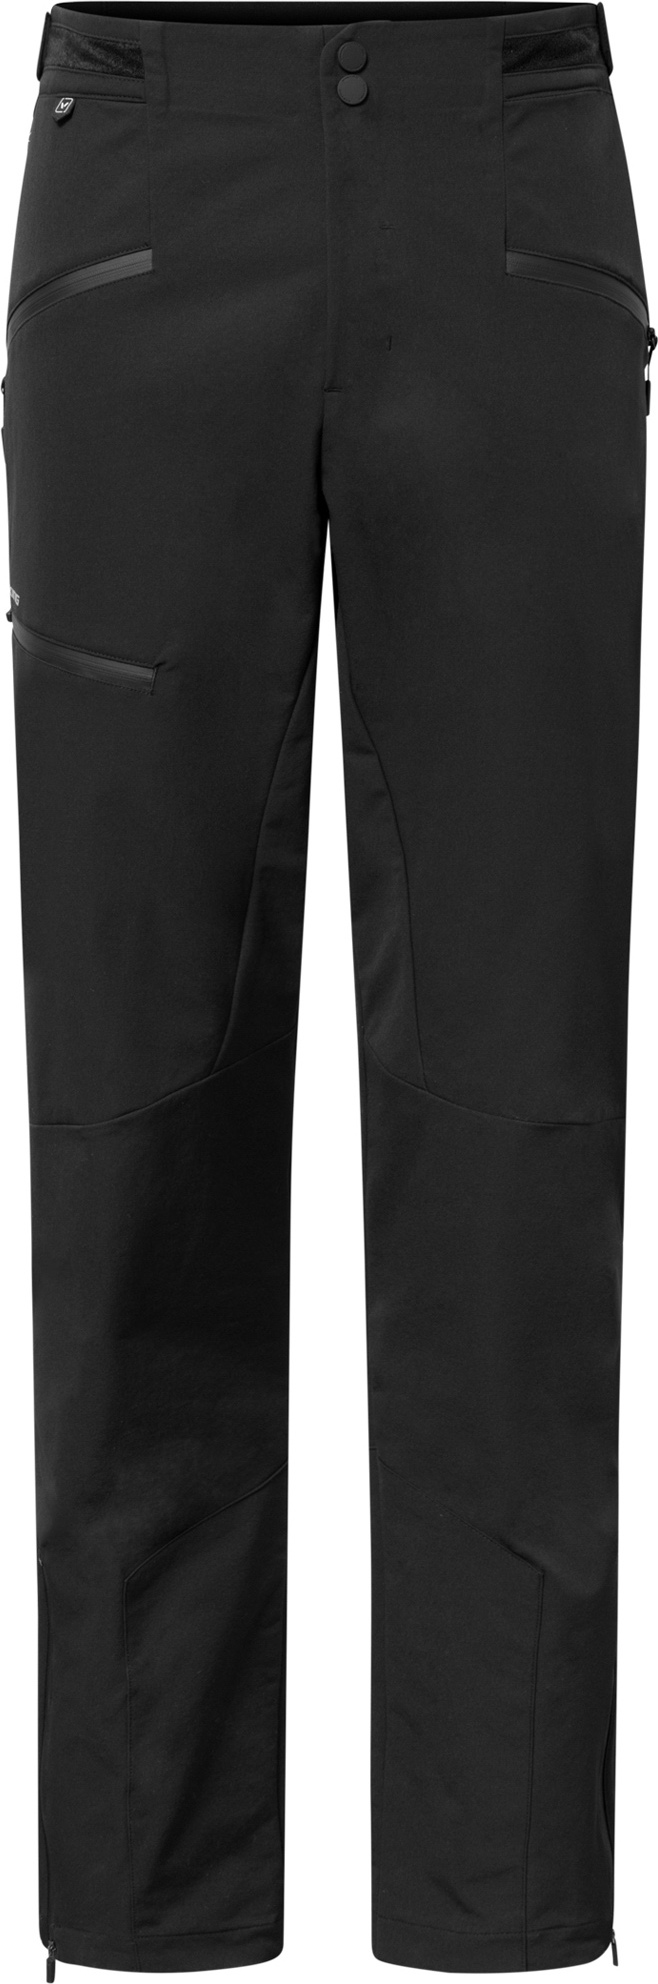 Pánské outdoorové kalhoty VIKING Expander Warm černá Velikost: M